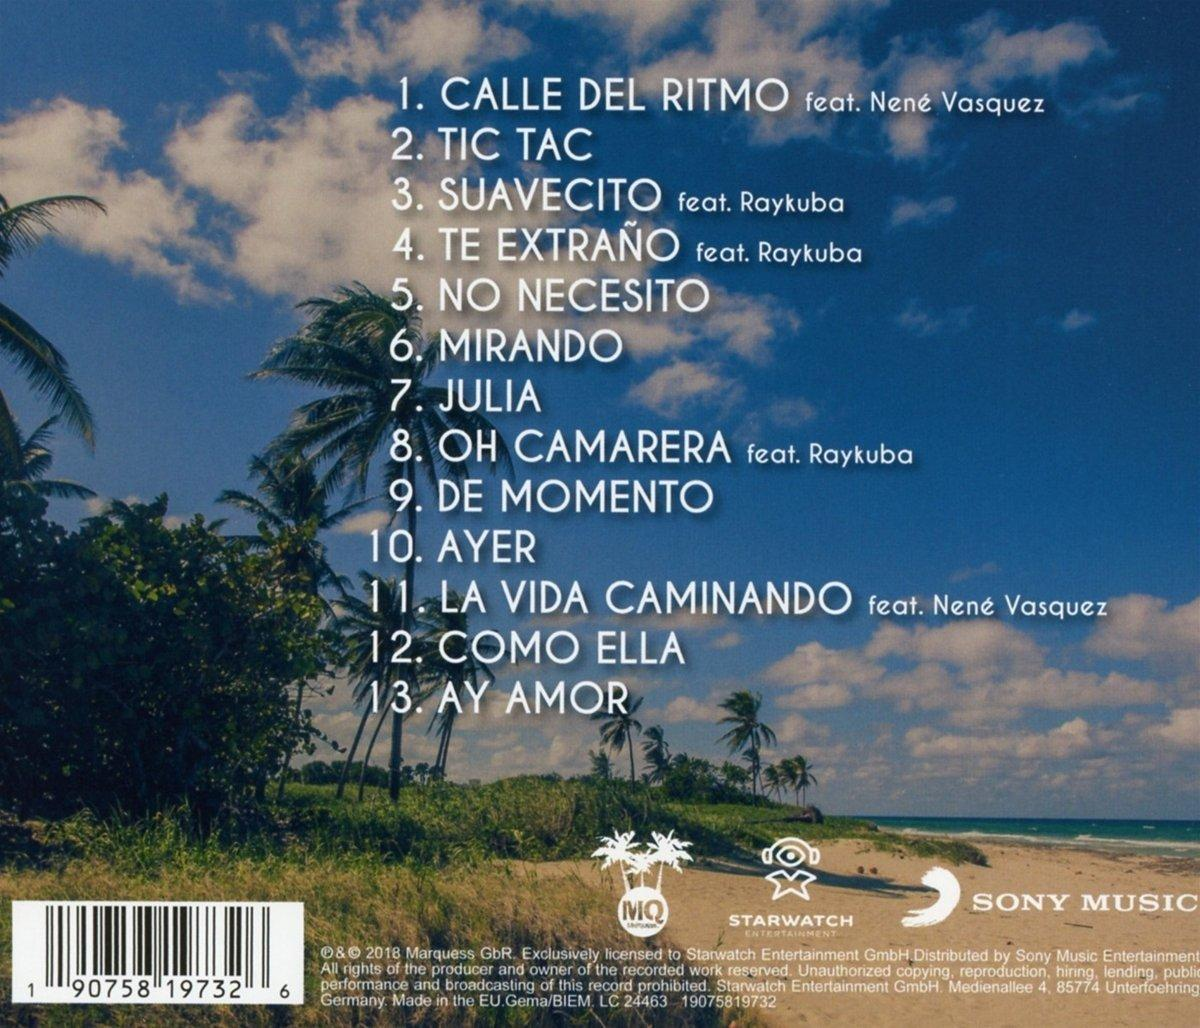 Marquess - En Movimiento - (CD)